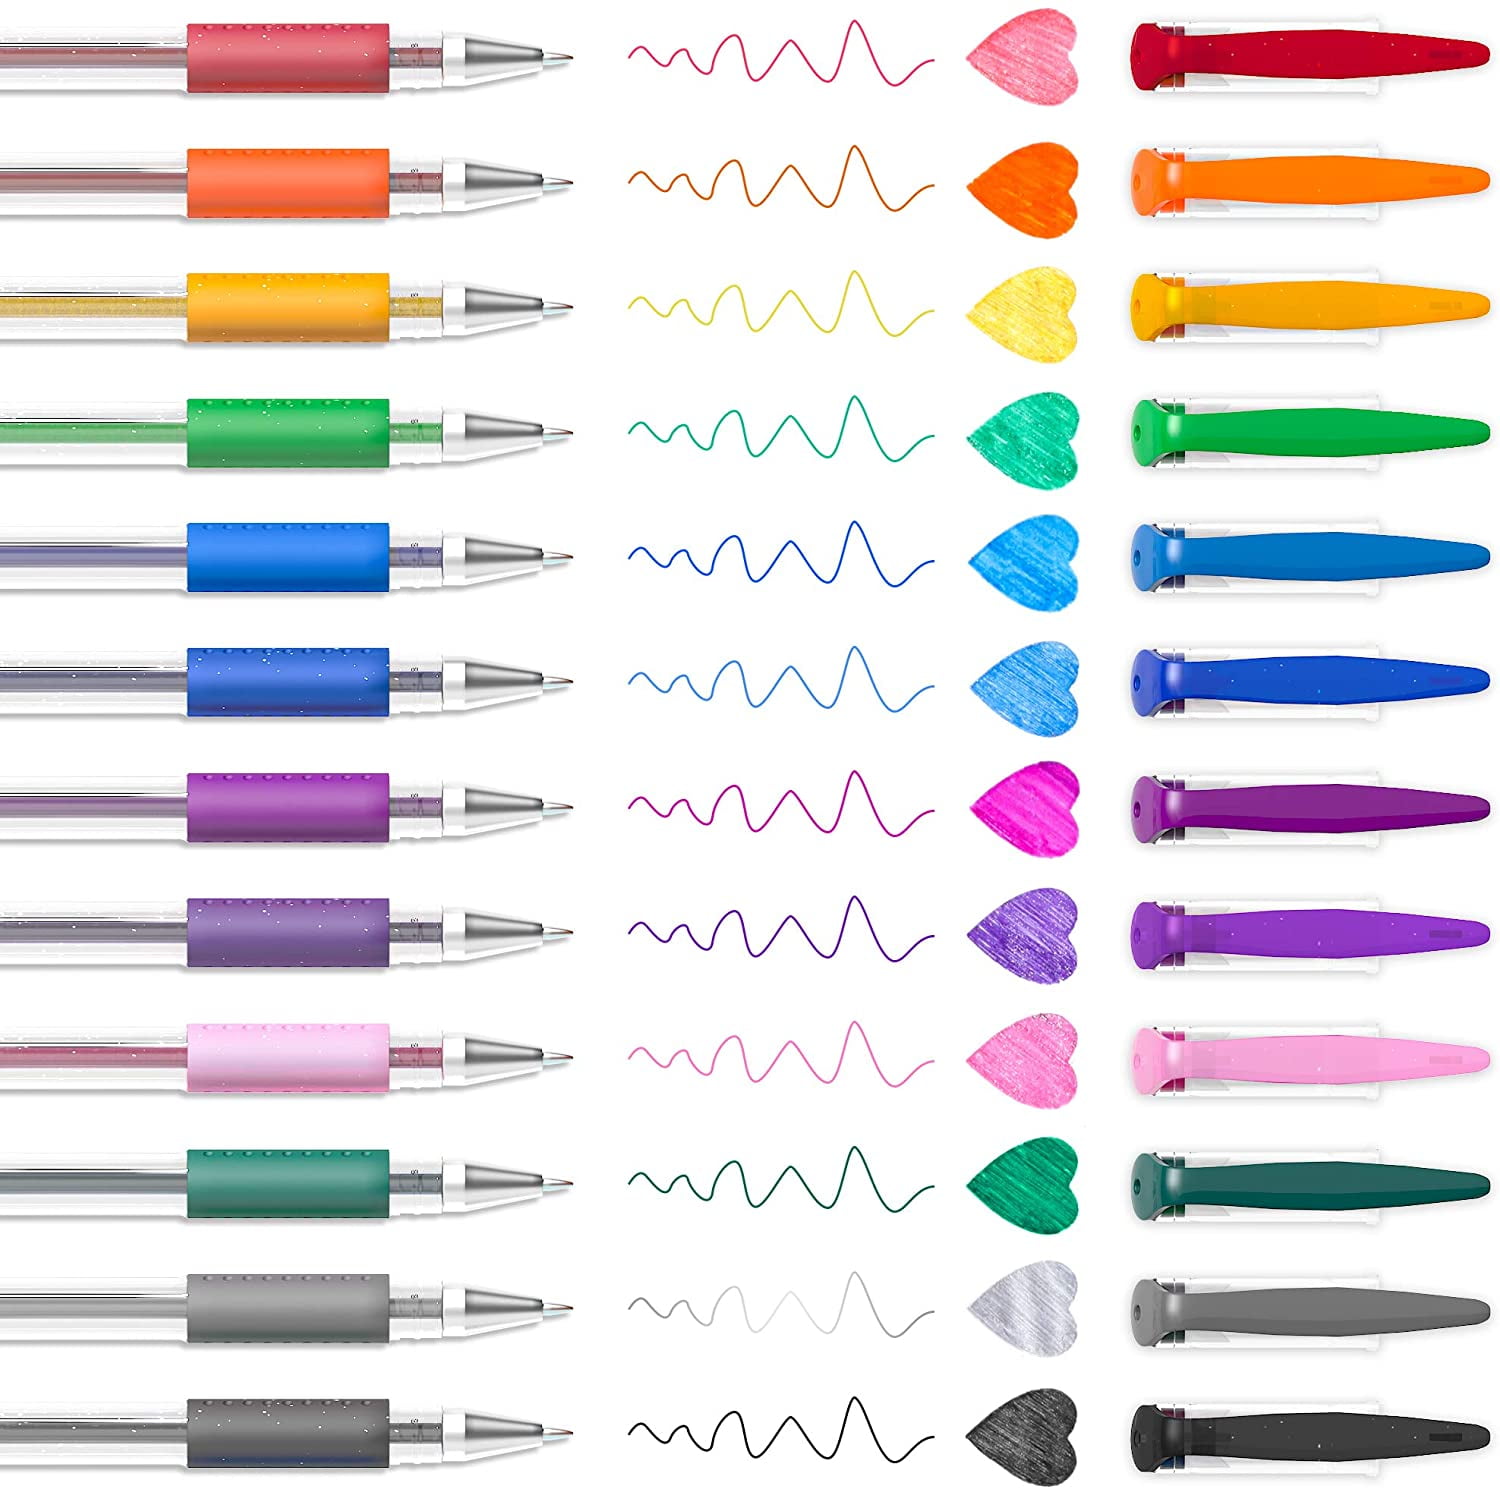 Shuttle Art Gel Pens Bundle, 120 Unique Colors (No Duplicates) Gel Pens Set  + 180 Gel Pen Refills, 7 Color Types for Kids Adults Coloring Books